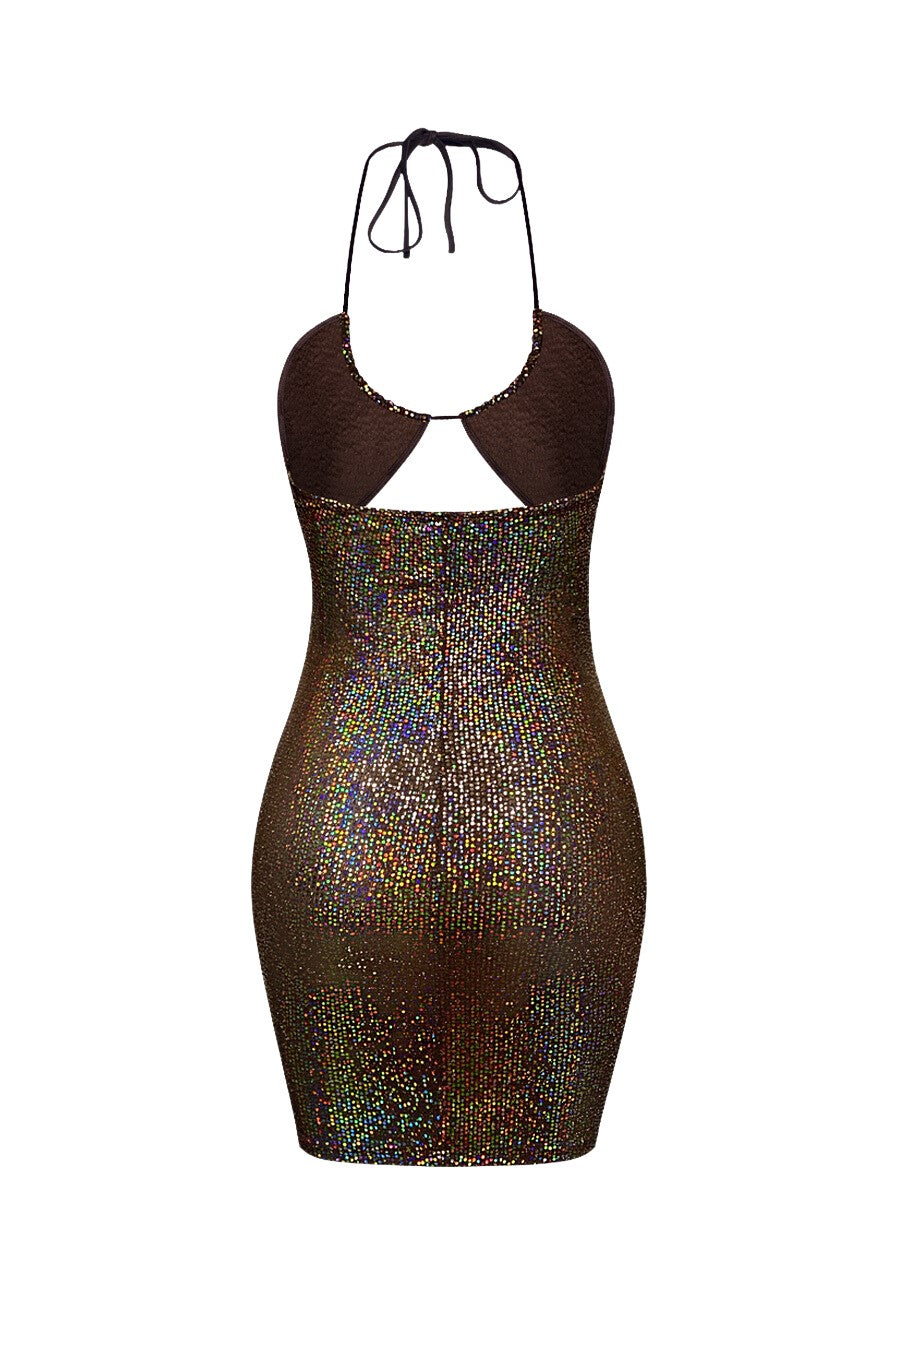 "ARM CANDY" Bronze Iridescent Sequins Two-Piece Short Dress